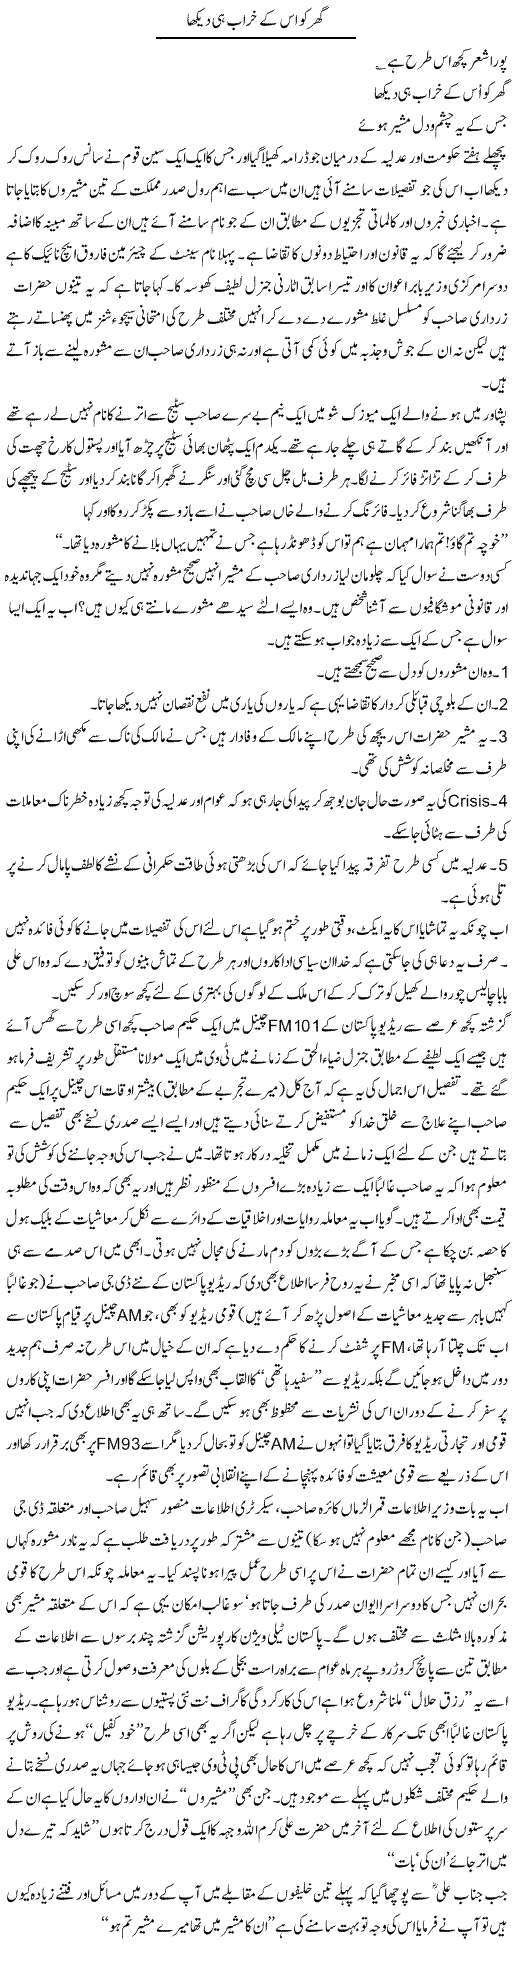 Ghar Khrab Express Column Amjad Islam 21 Feb 2010